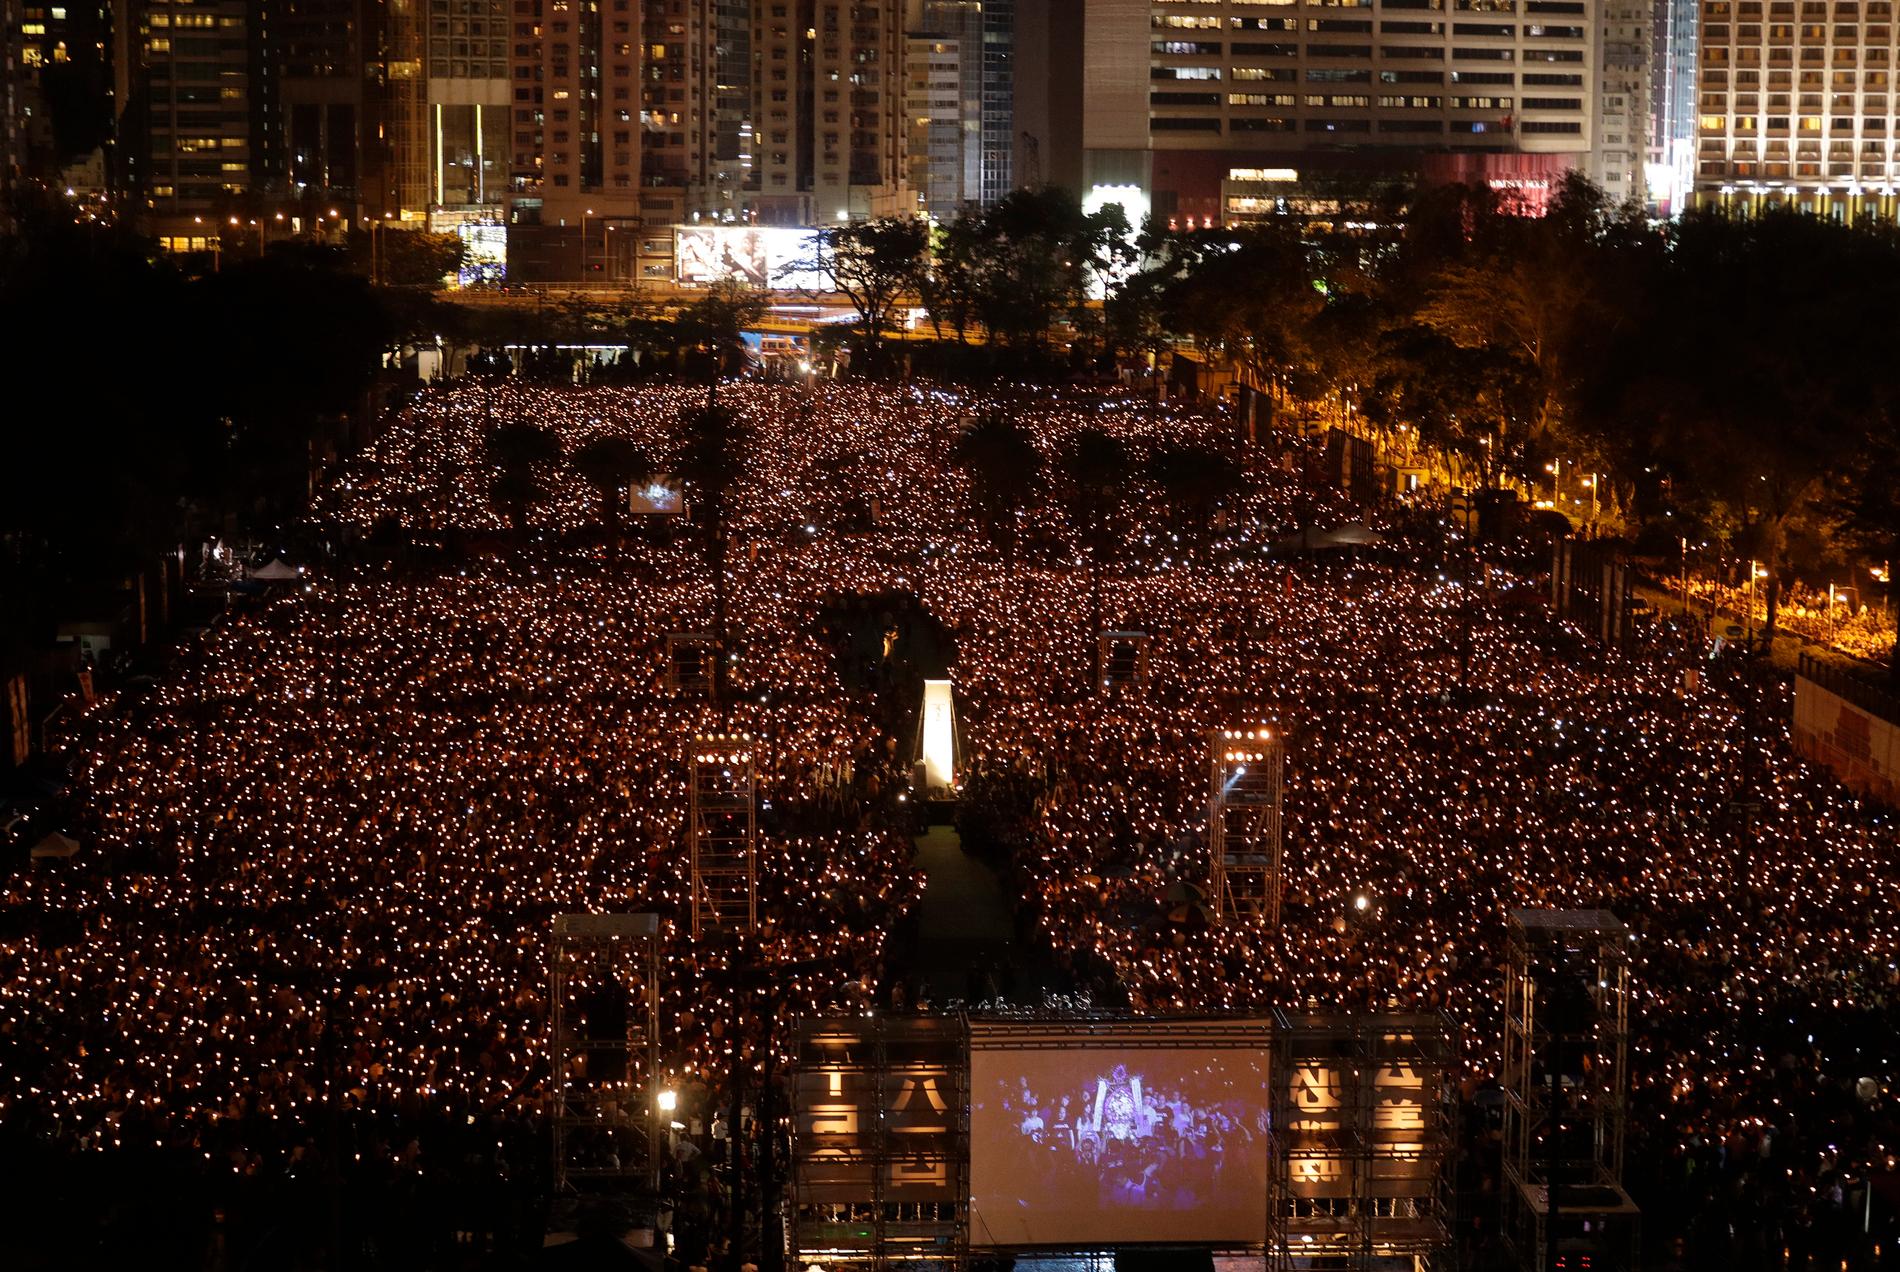 Tusentals människor samlades vid förra årets ljusvaka för offren vid Himmelska fridens torg 1989.